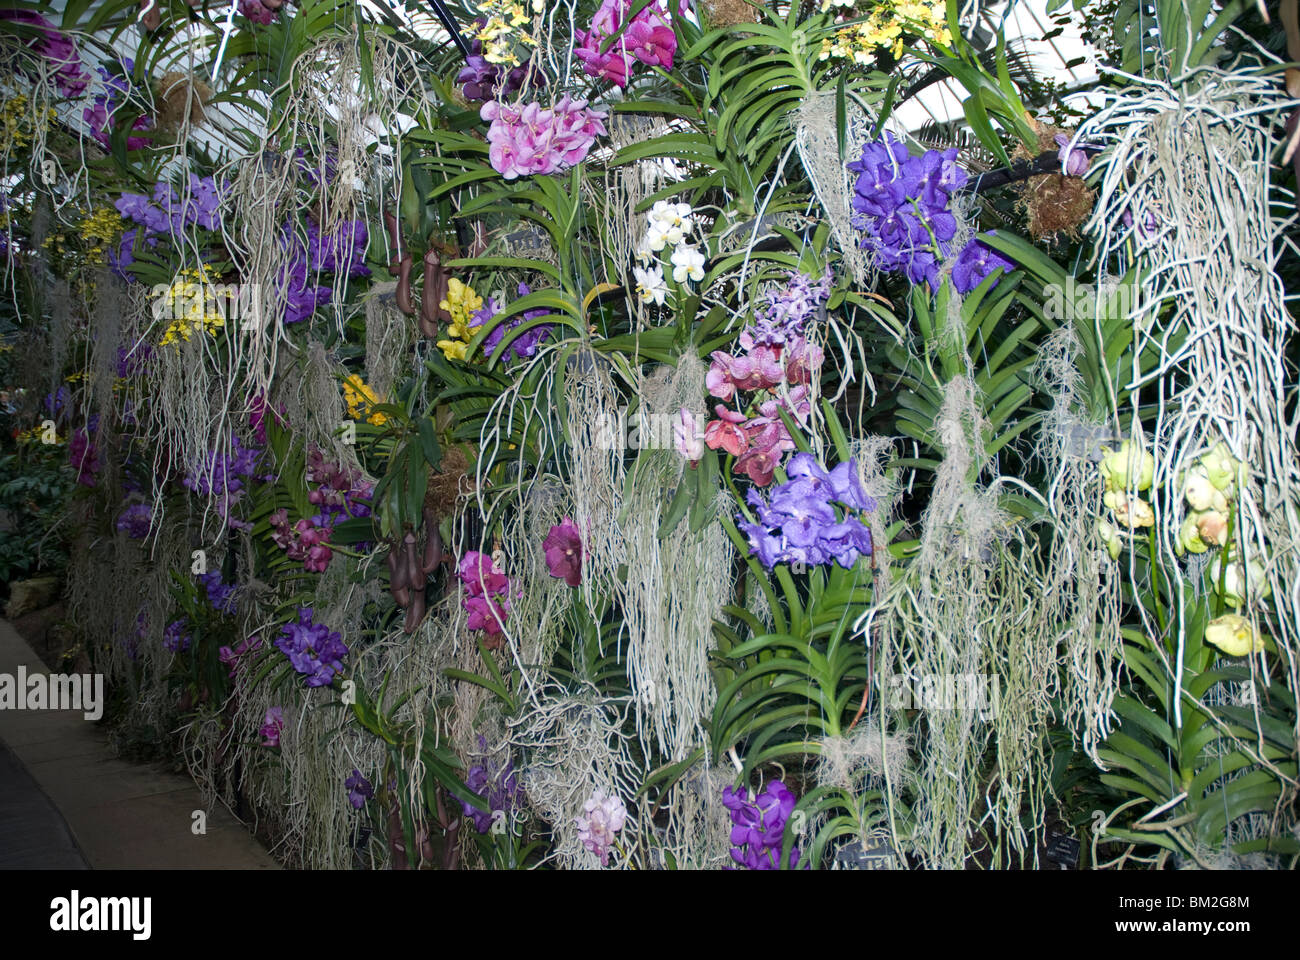 Orchidee vanda immagini e fotografie stock ad alta risoluzione - Alamy